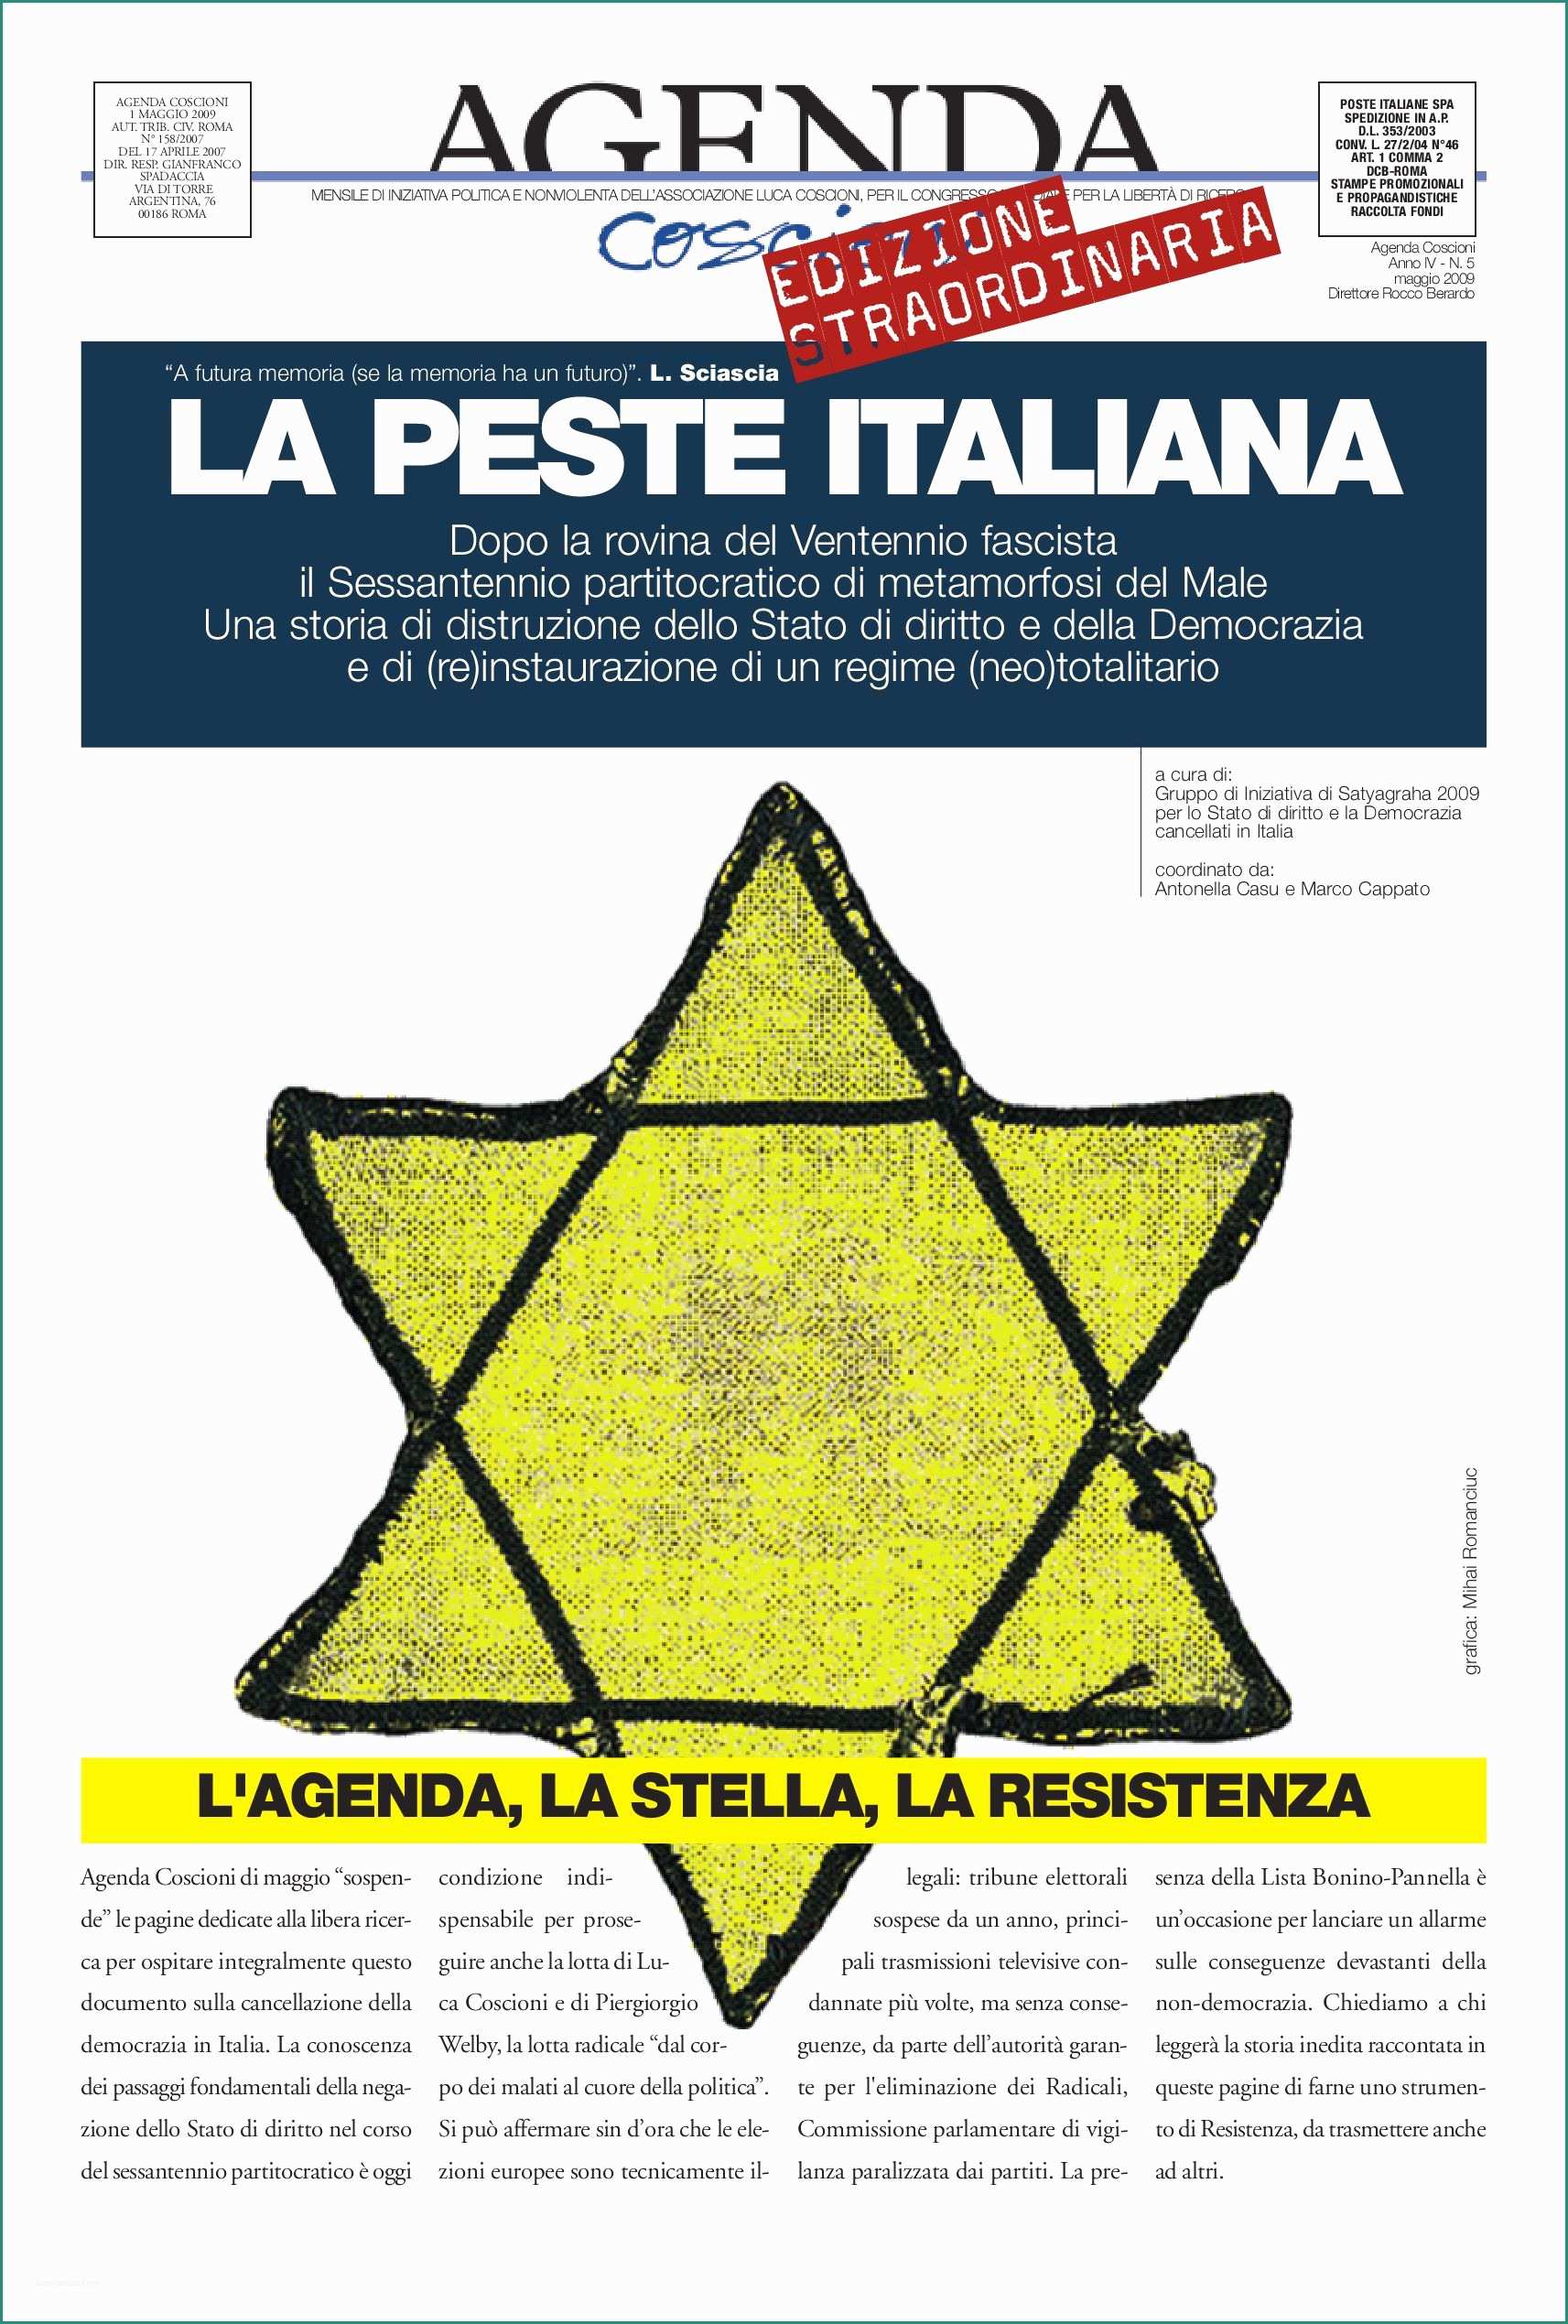 Attivatore Fossa Biologica Fai Da Te E Agenda Coscioni "la Peste Italiana" by Mihai Romanciuc issuu